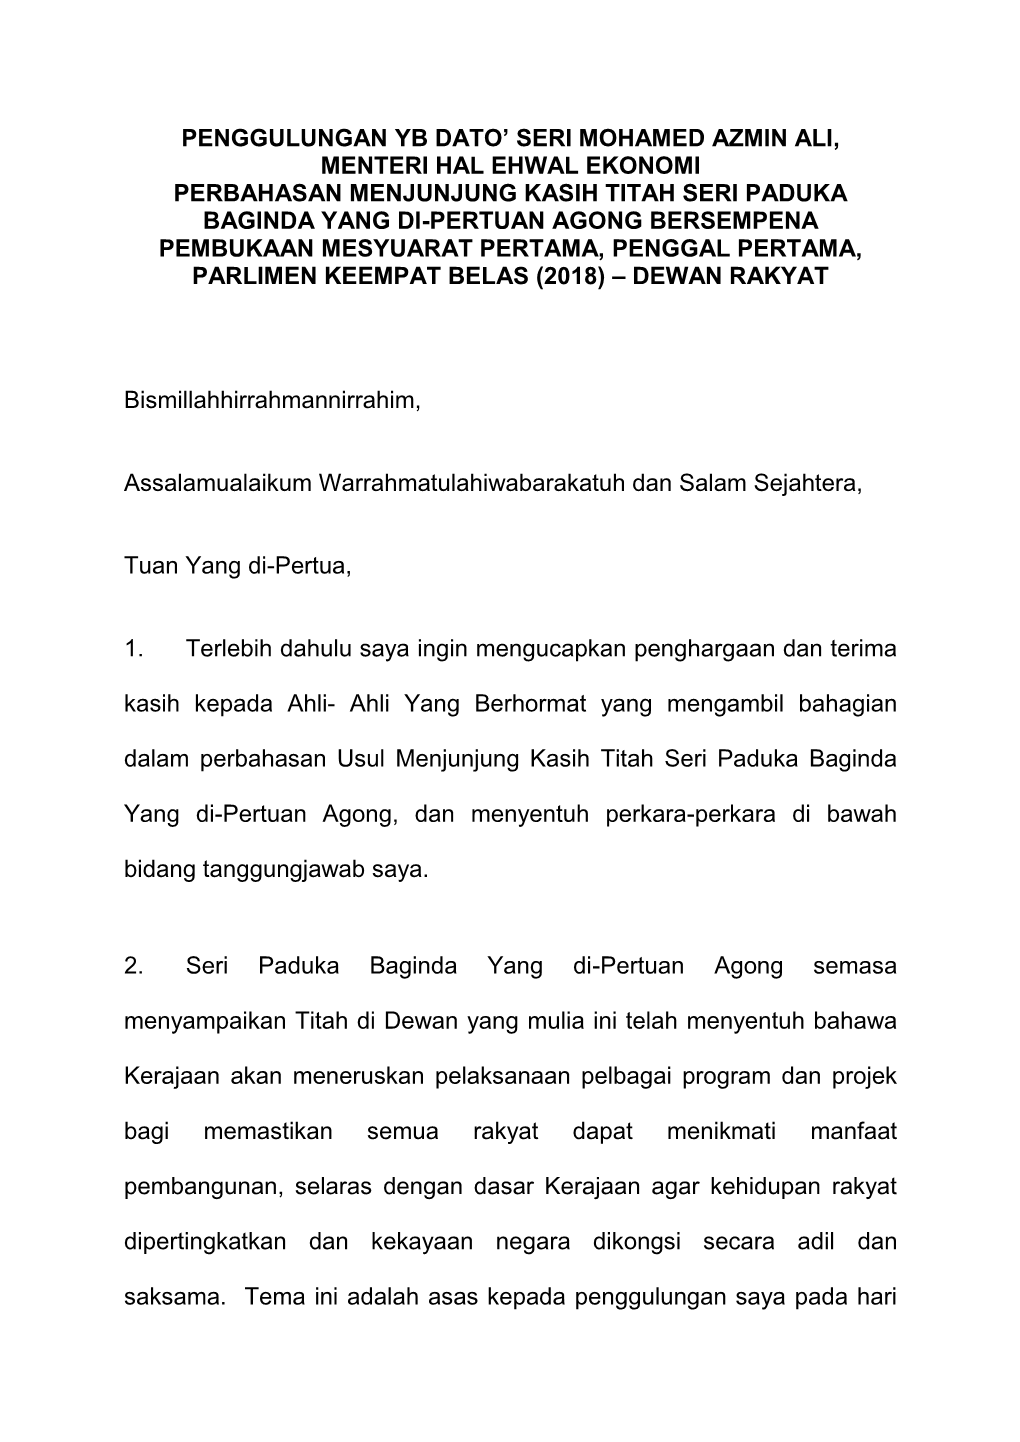 Penggulungan Yb Dato' Seri Mohamed Azmin Ali, Menteri